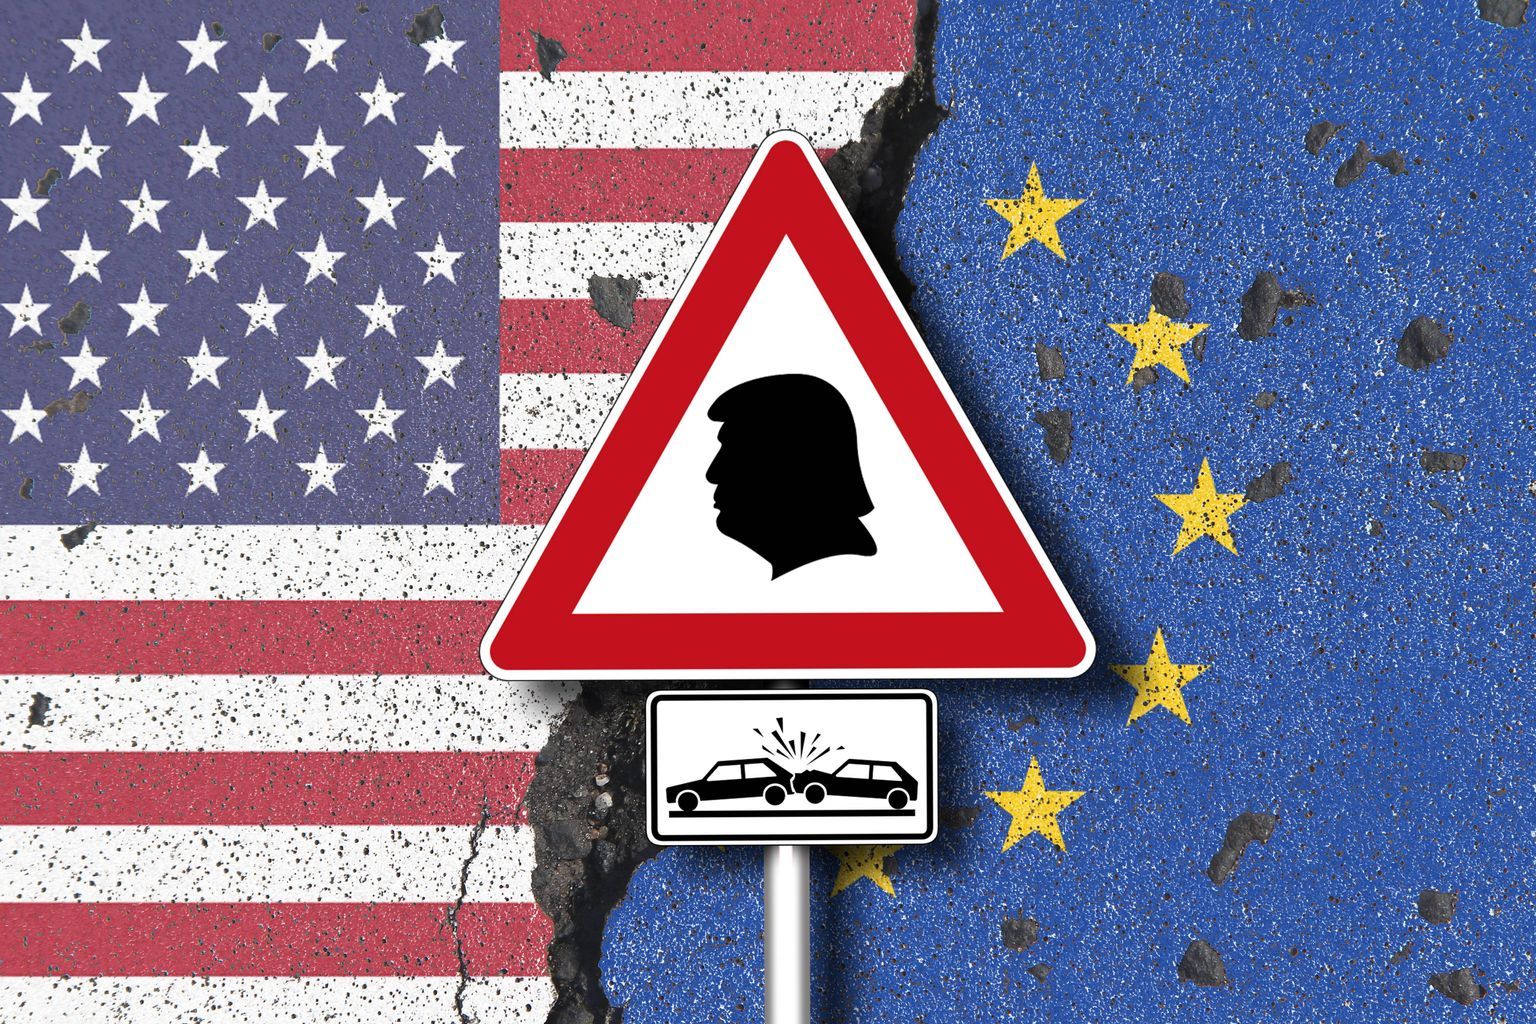 Trumpi väljakuulutatud kaubandustariifid võivad anda suure löögi ka Euroopa Liidu majandusele.